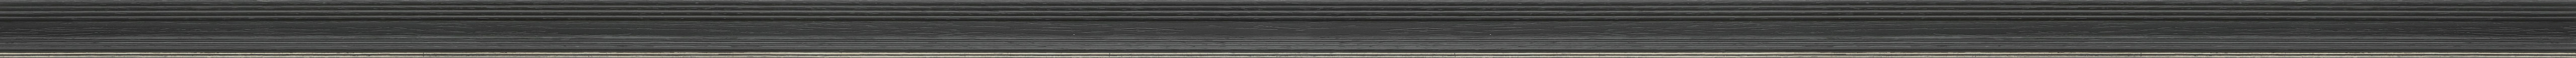 Ντεκαπέ μαύρη κορνίζα με ασημί ρίγα frame